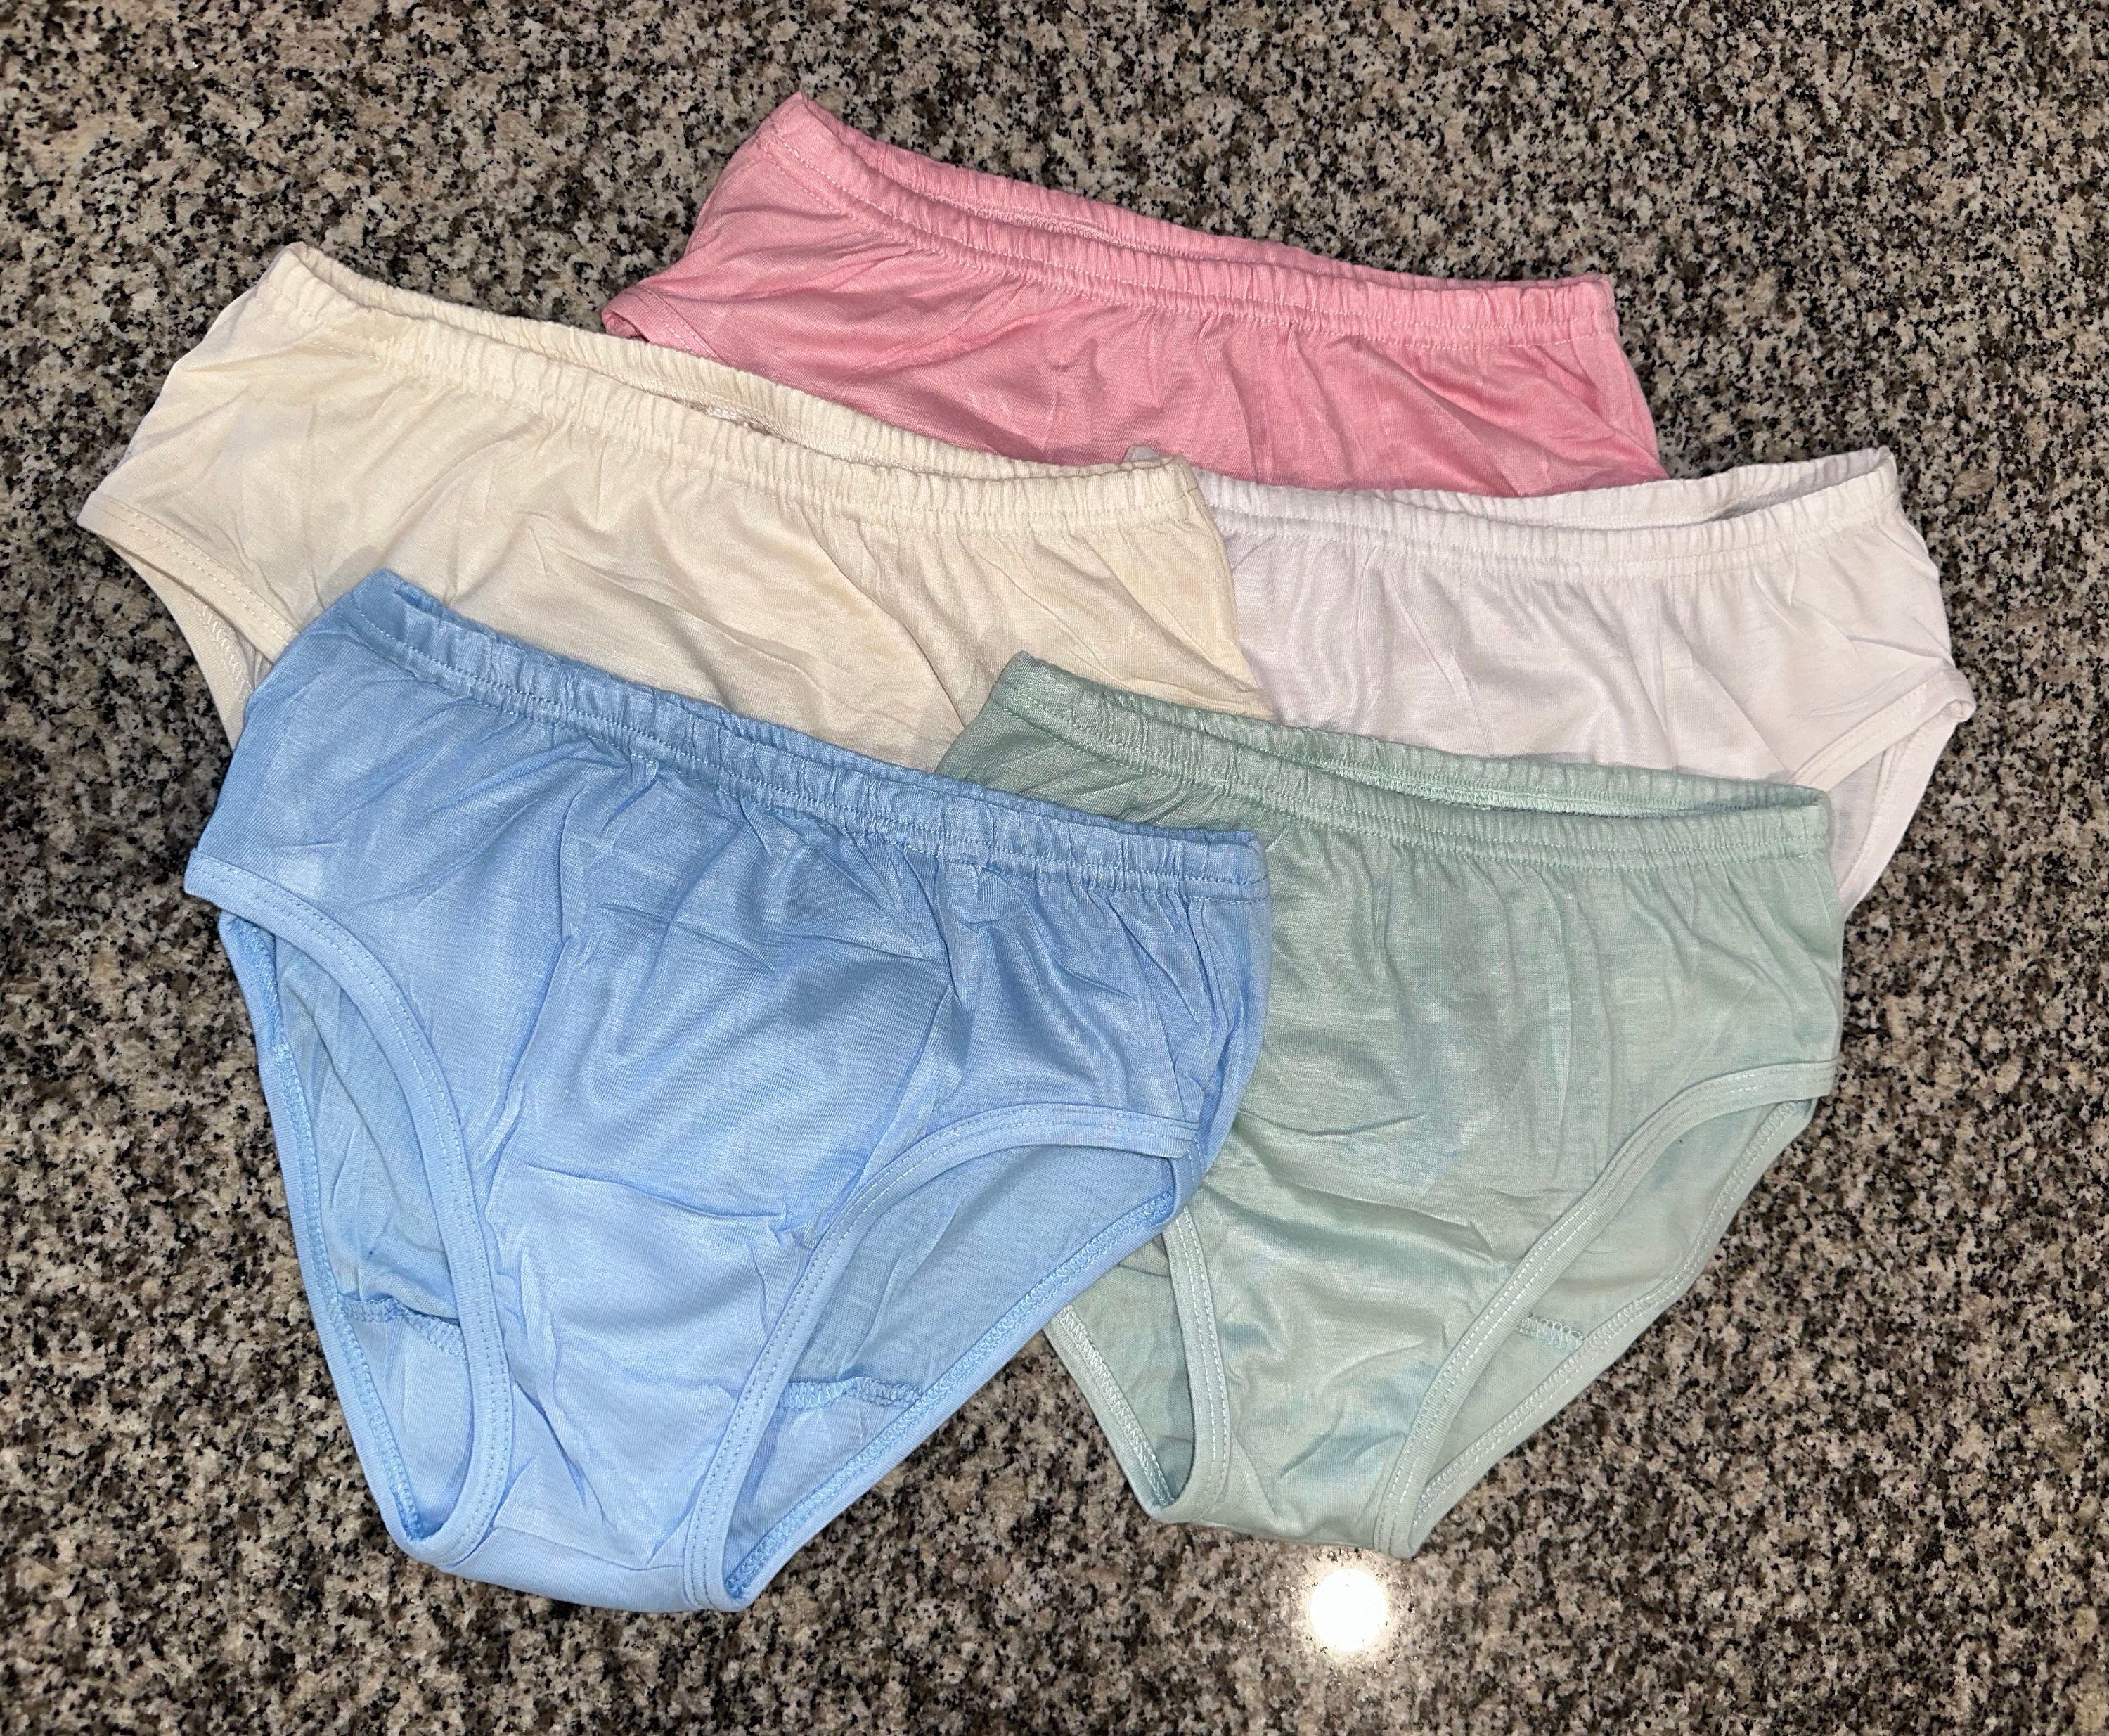 Vintage Period Panties Ladies Unused Pink Knickers 1980-s Size S -   Canada